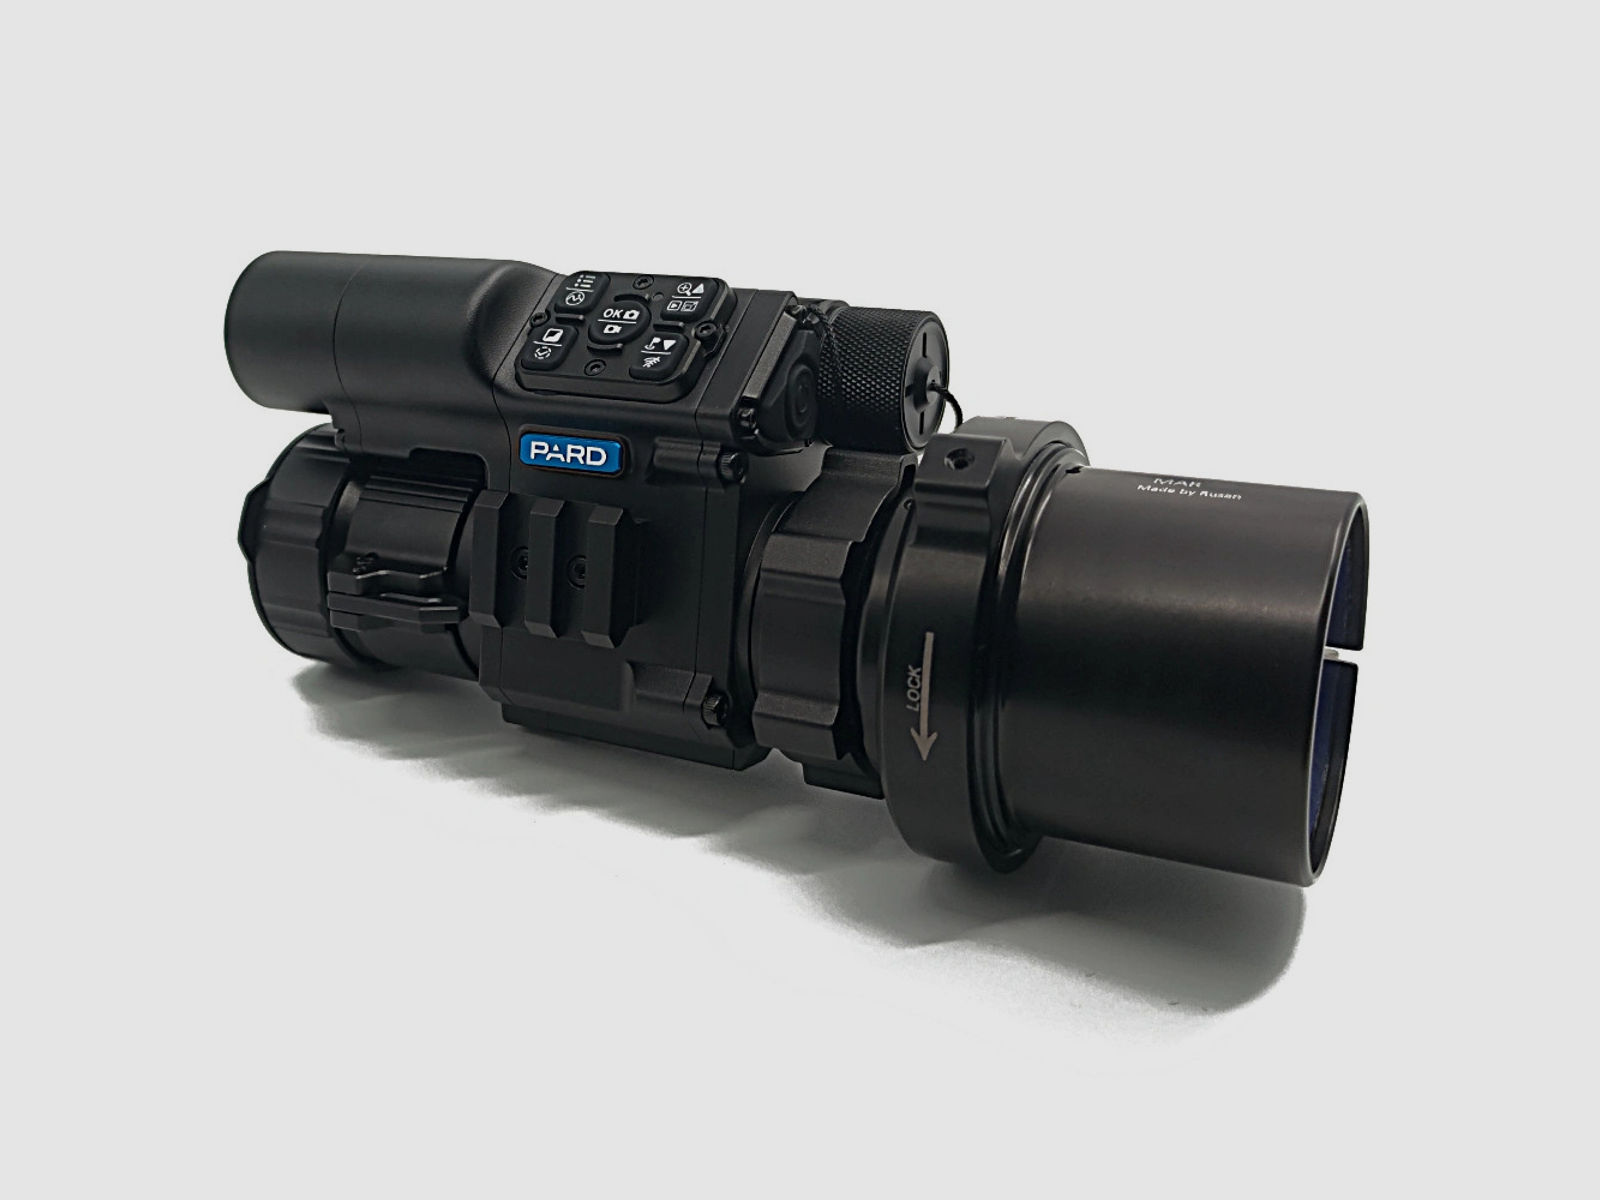 PARD FD1 Nachtsicht 3 in 1 Vorsatz, Monokular & Zielfernrohr - 850 nm mit LRF 30 mm RUSAN MAR + RUSAN MCR